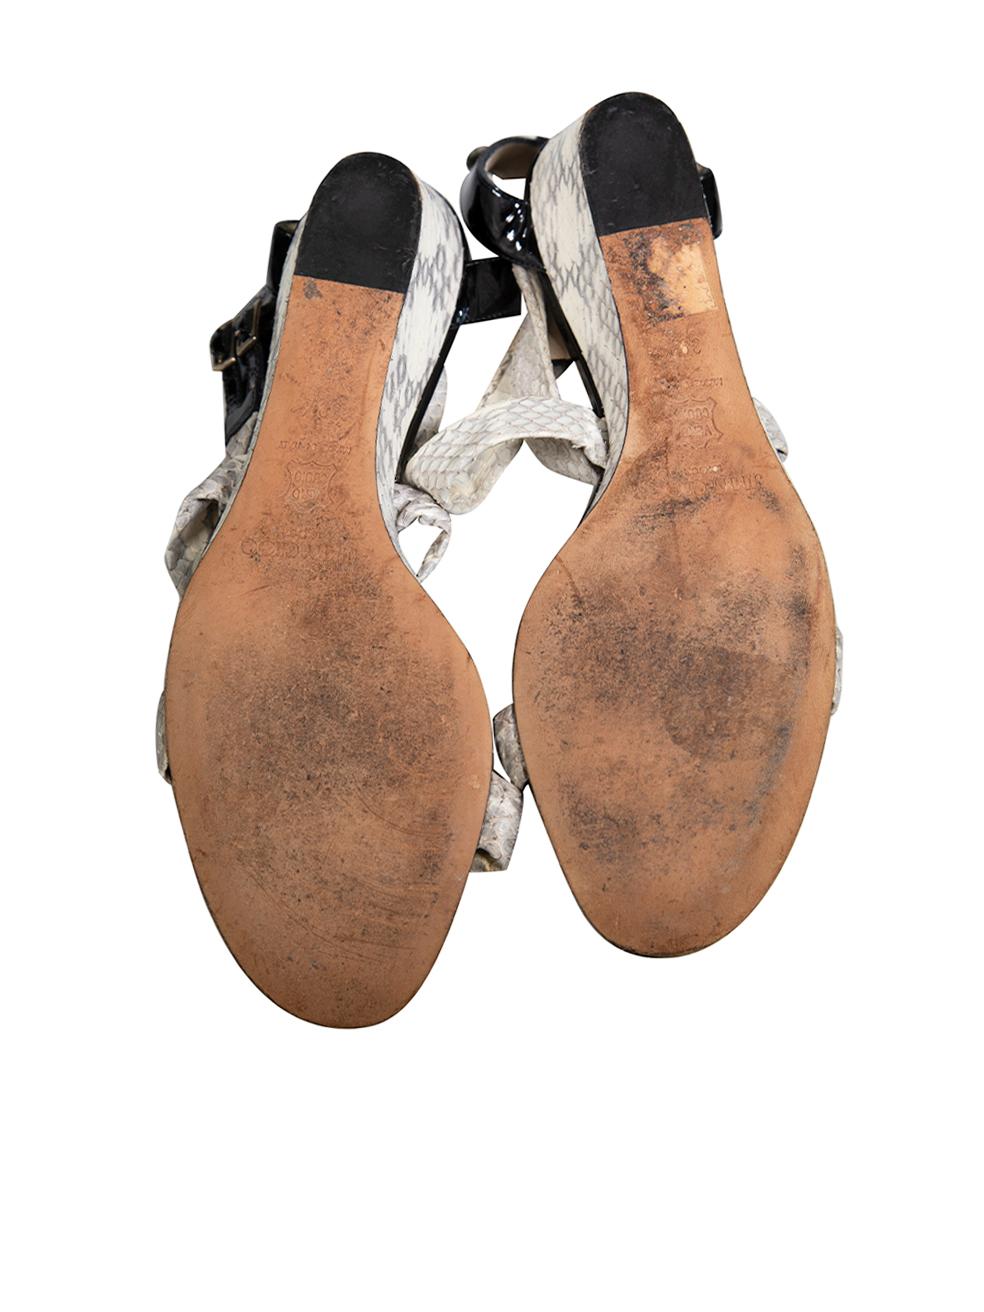 Women's Jimmy Choo Snakeskin Cross Strap Wedge Sandals Size IT 39.5 For Sale